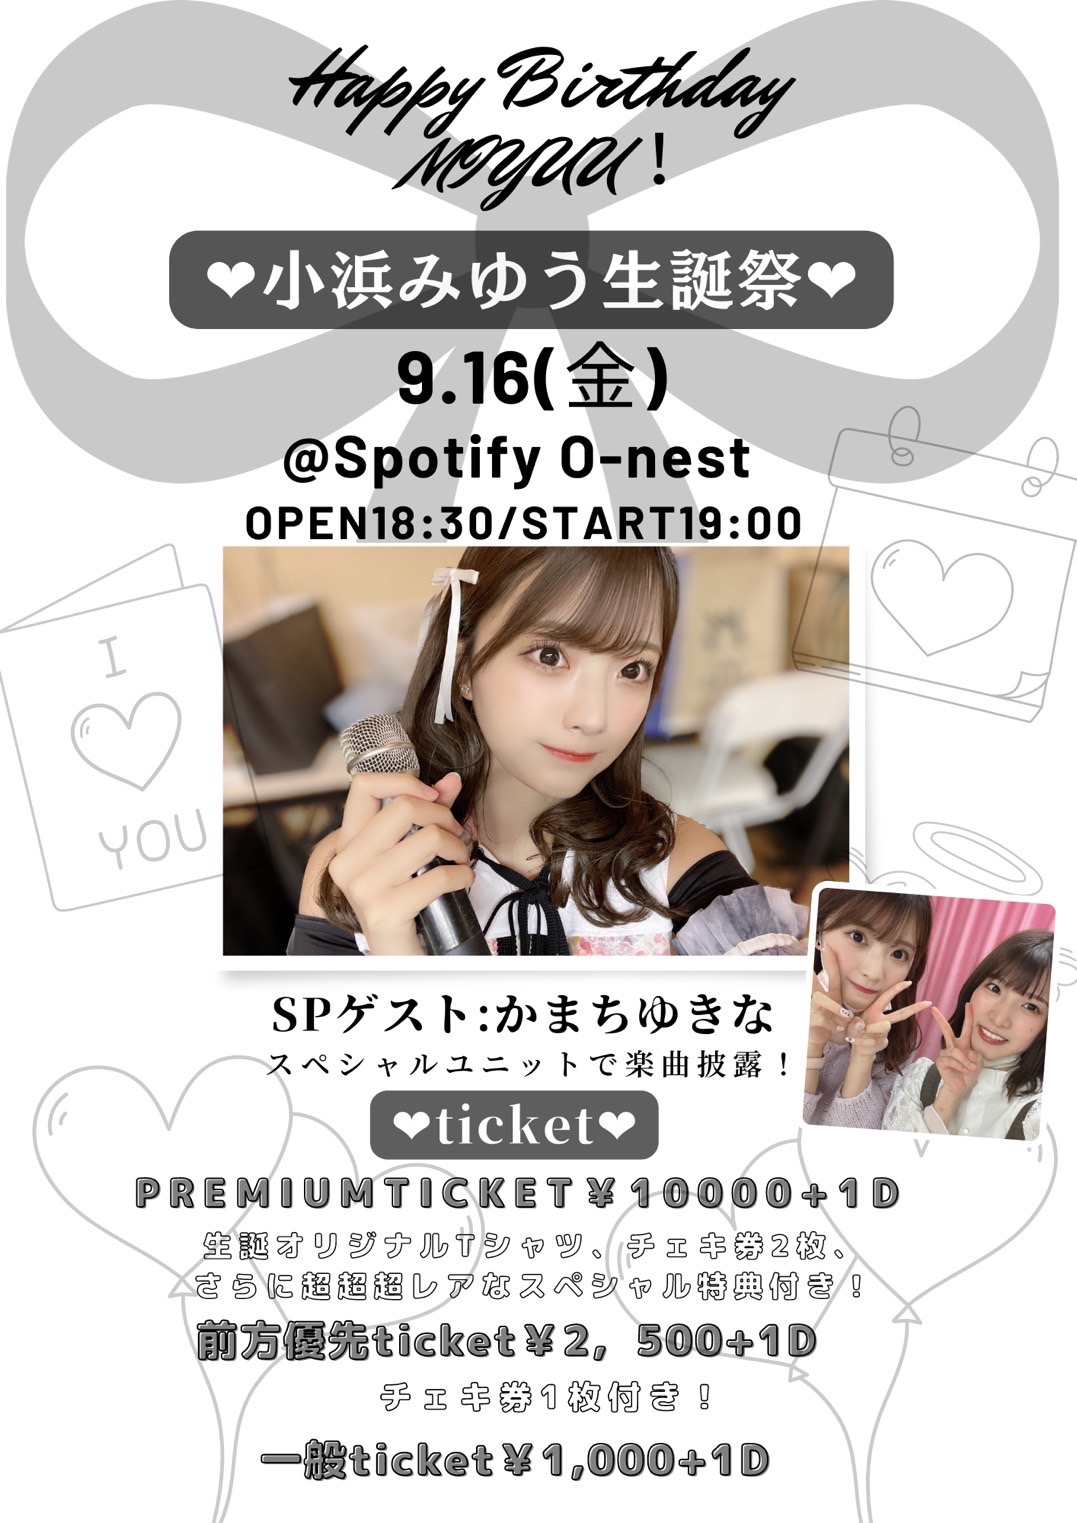 【小浜みゆう生誕祭】@Spotify O-nest